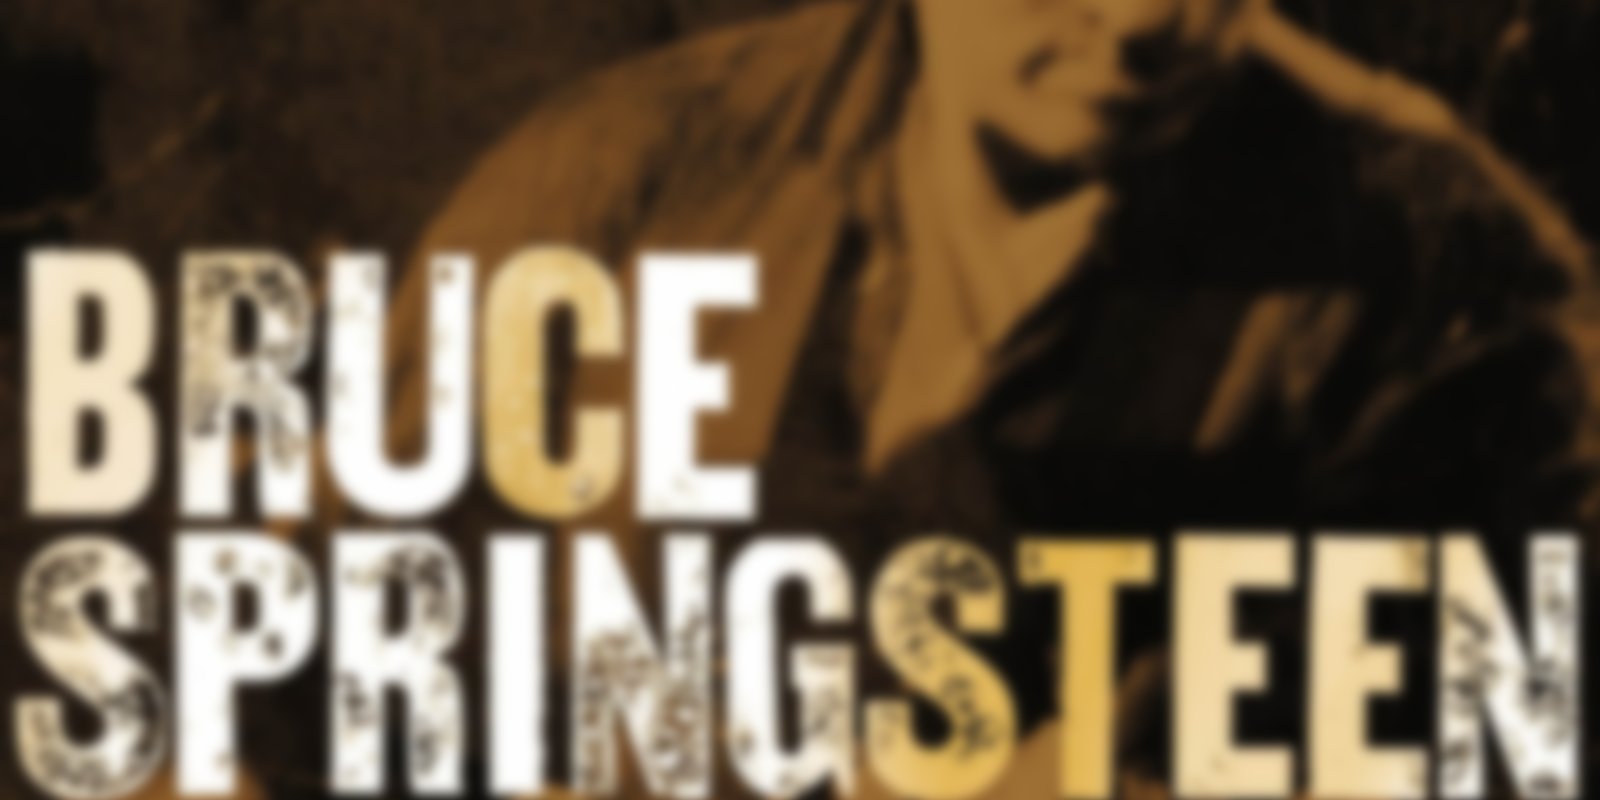 VH-1 Storytellers - Bruce Springsteen